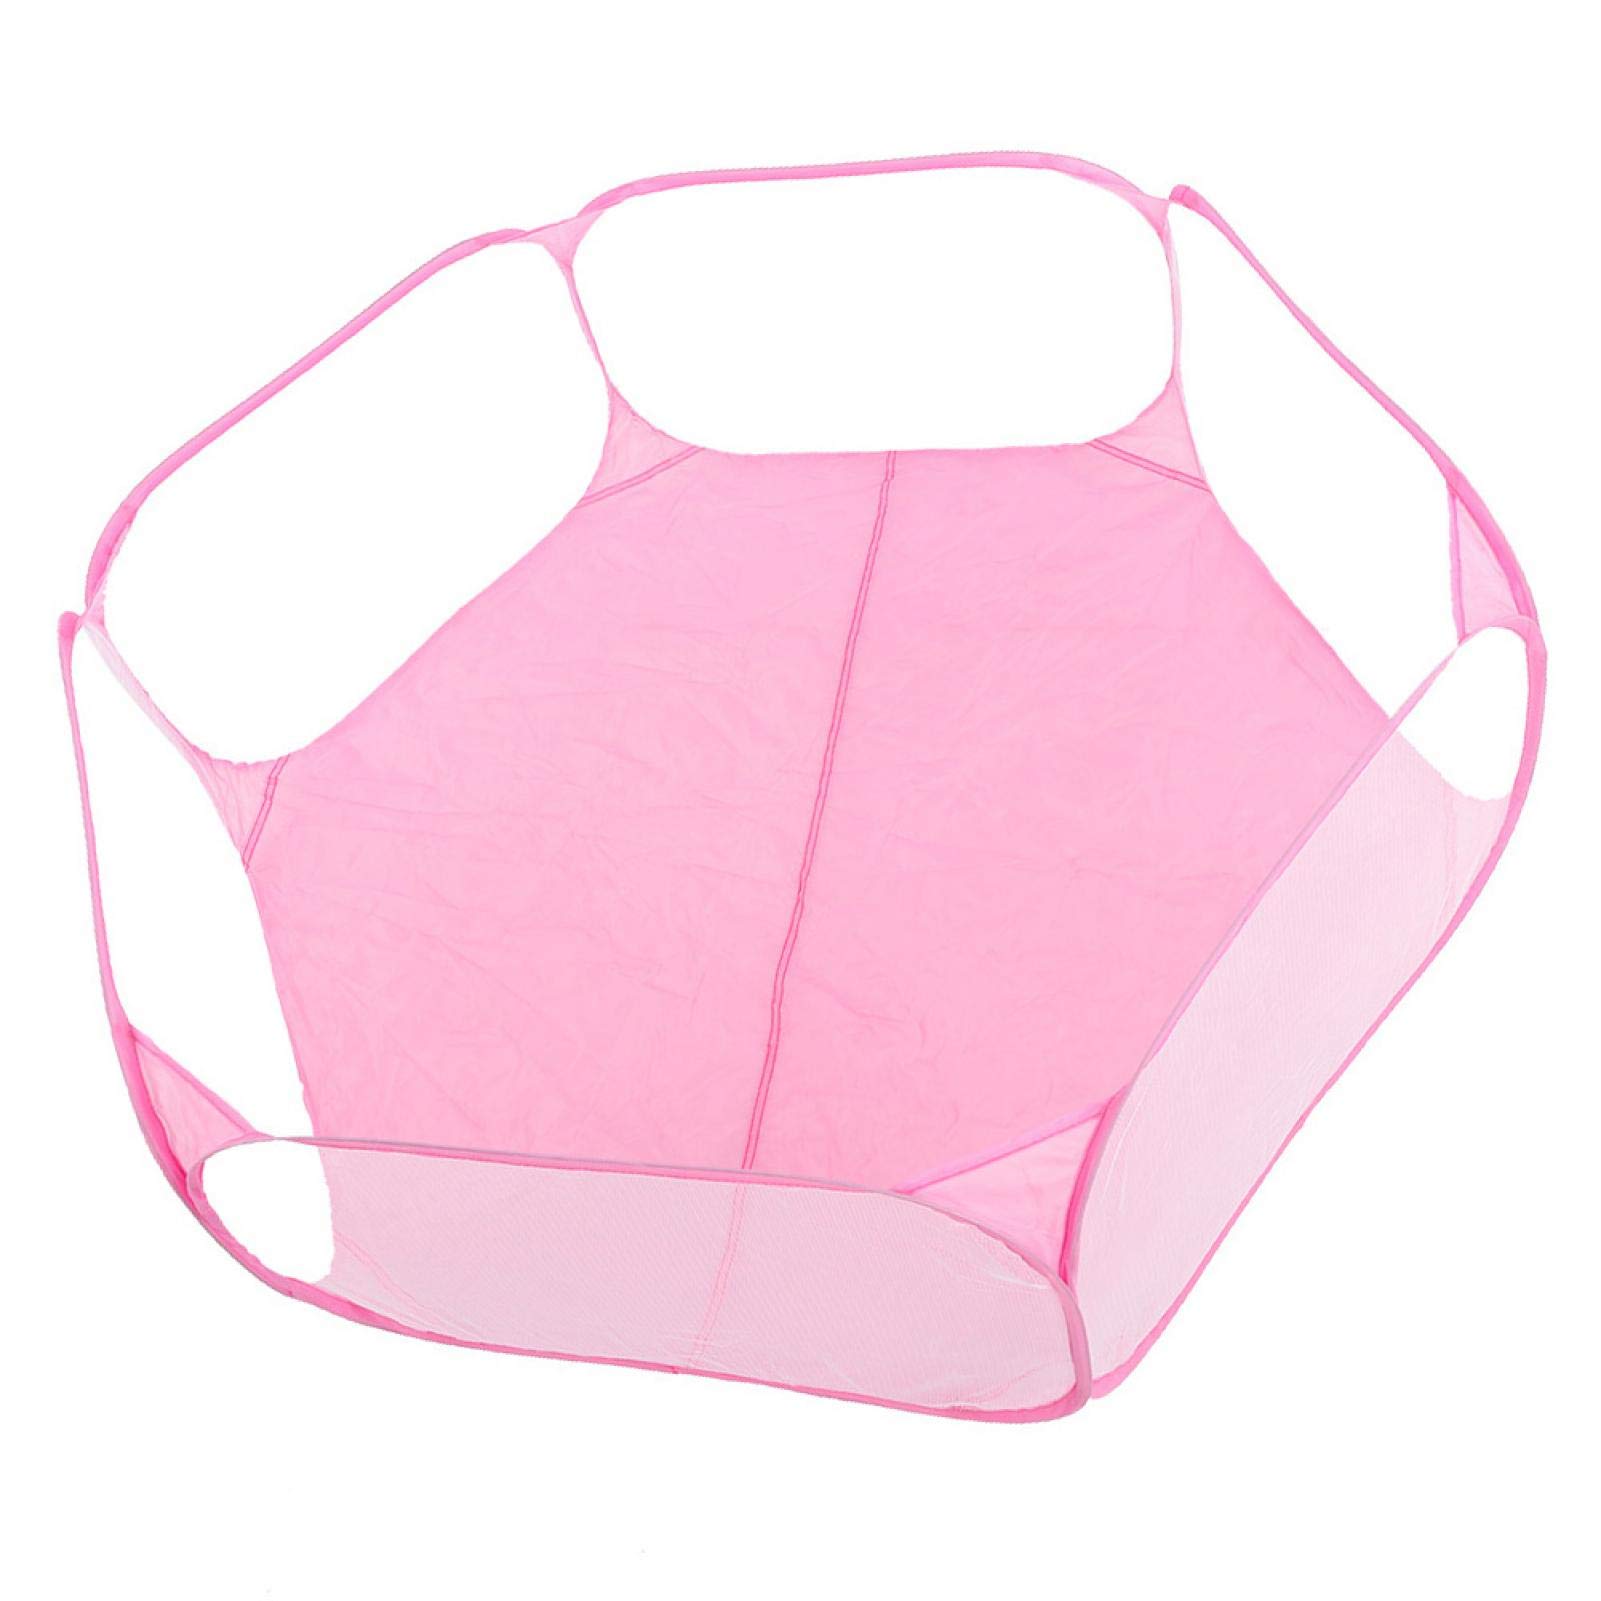 Yisenda Haustier Laufstall, Haustier Faltzaun Atmungsaktiv Faltbar Tragbar Komfortabel Transparent Für Haustier Für Welpe Katzenkaninchen zum Spielen für die Ruhe(Pink)